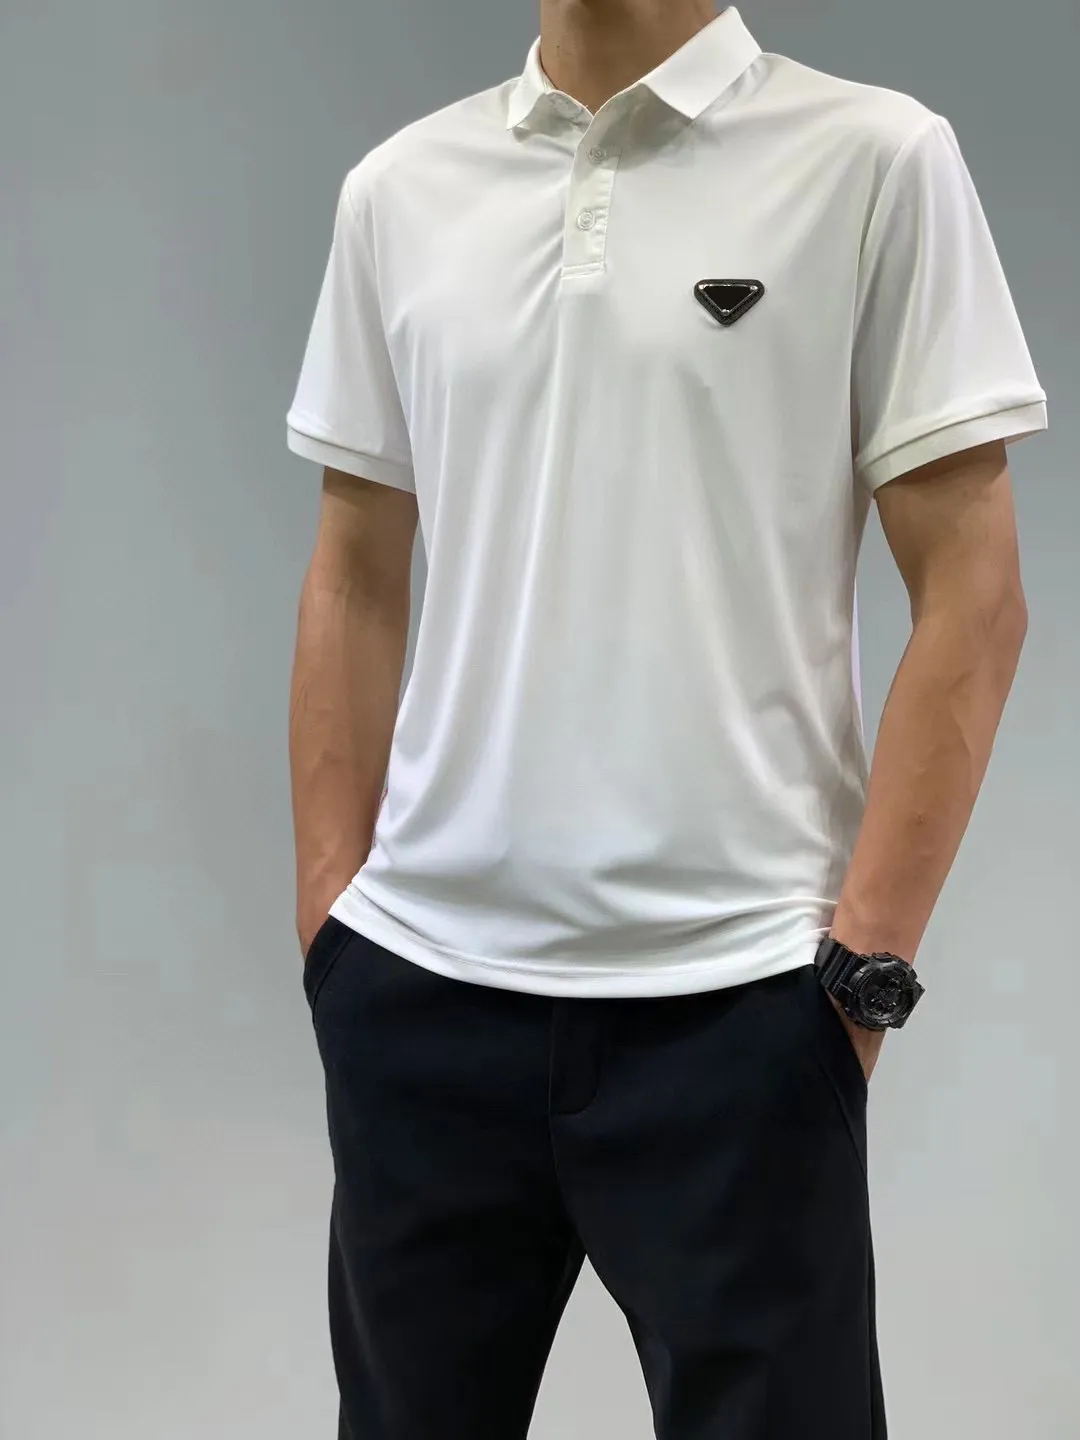 21SS ユニセックス秋メンズ tシャツスポーツレトロポロブランド tシャツ文字デジタル印刷ペンギンプリント機能ラムウールビジネスレジャーシリーズトップス